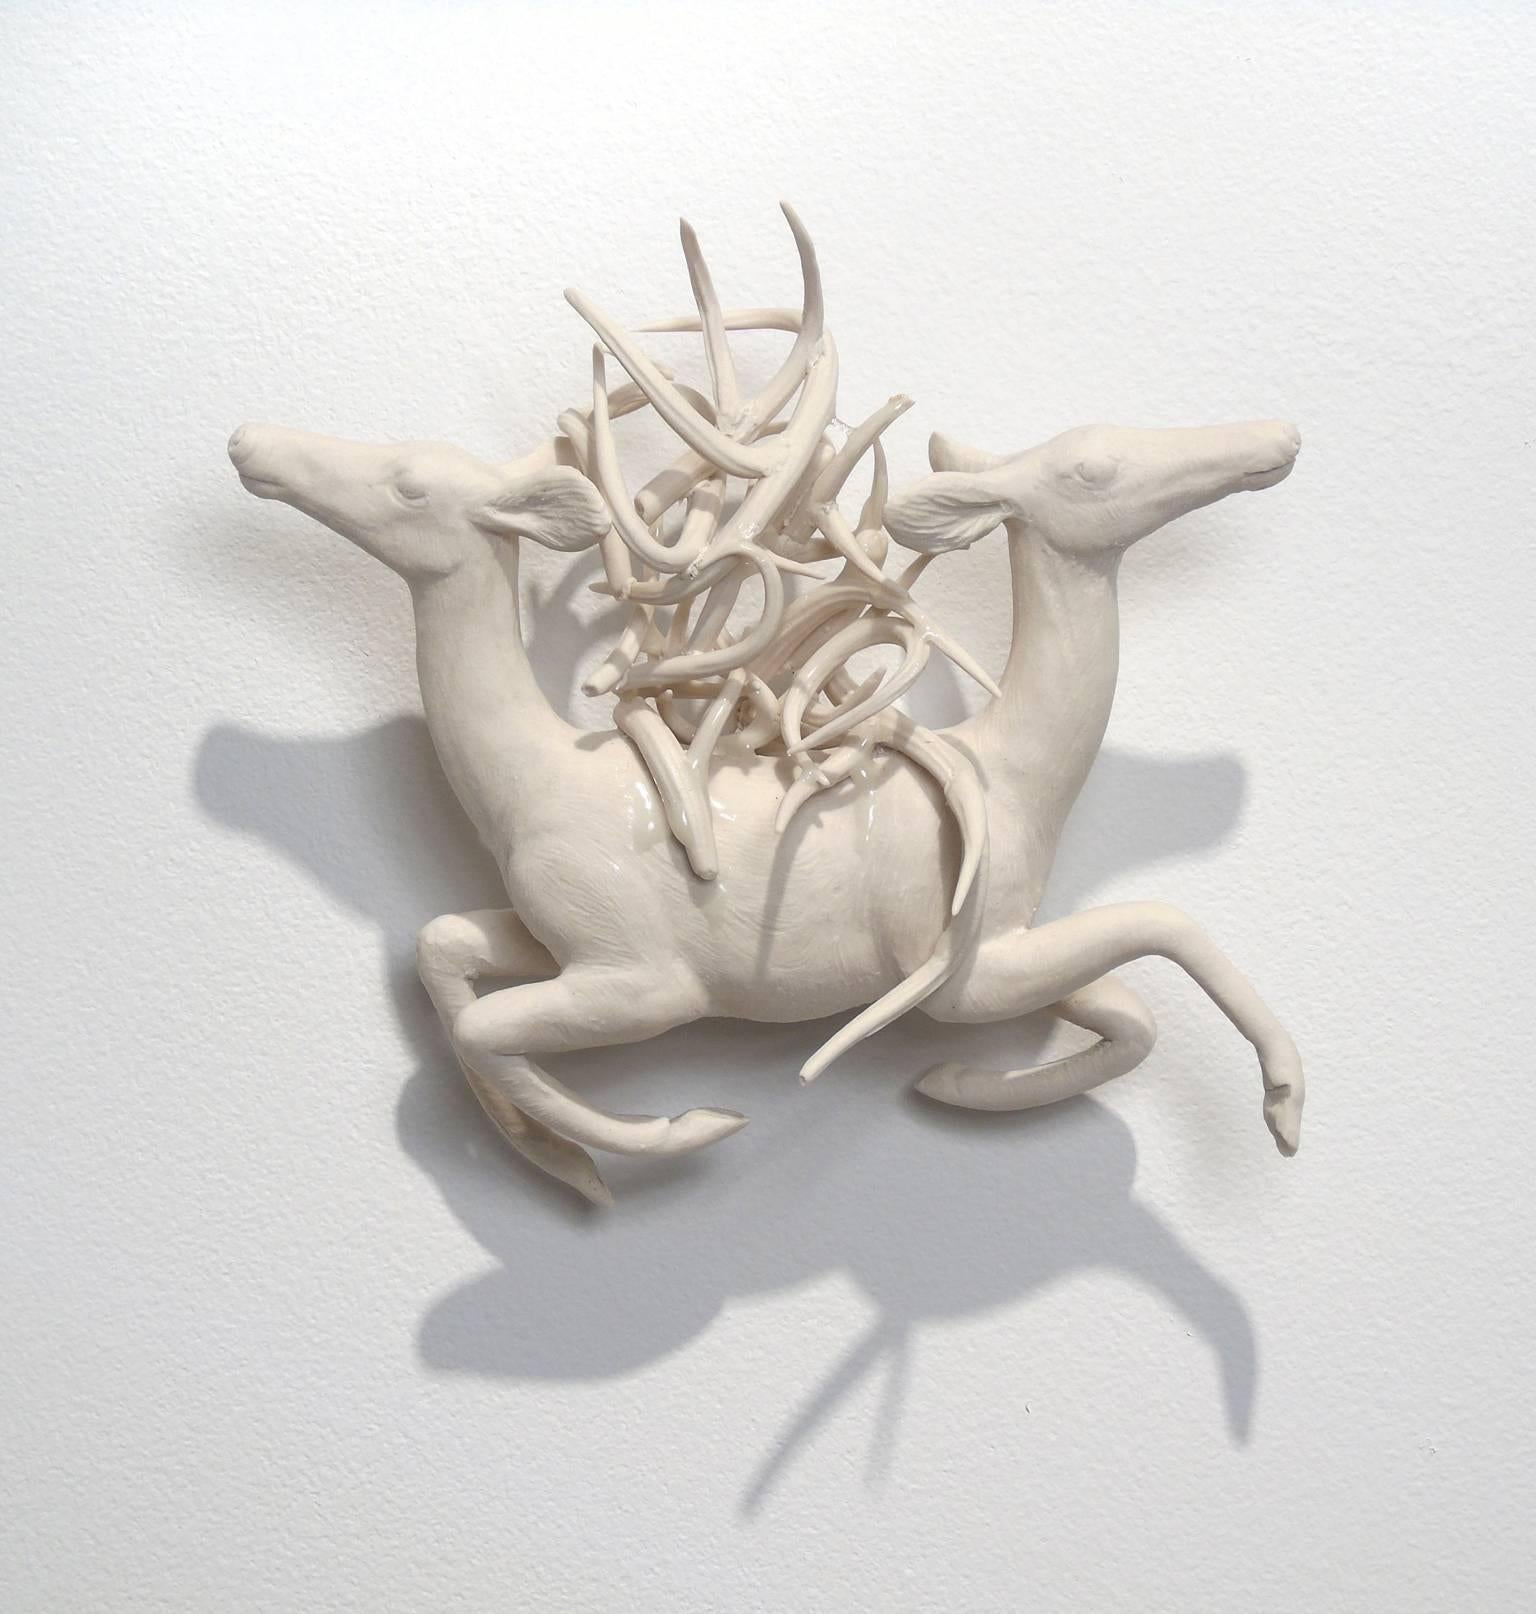 Burden - Sculpture by Robin Whiteman